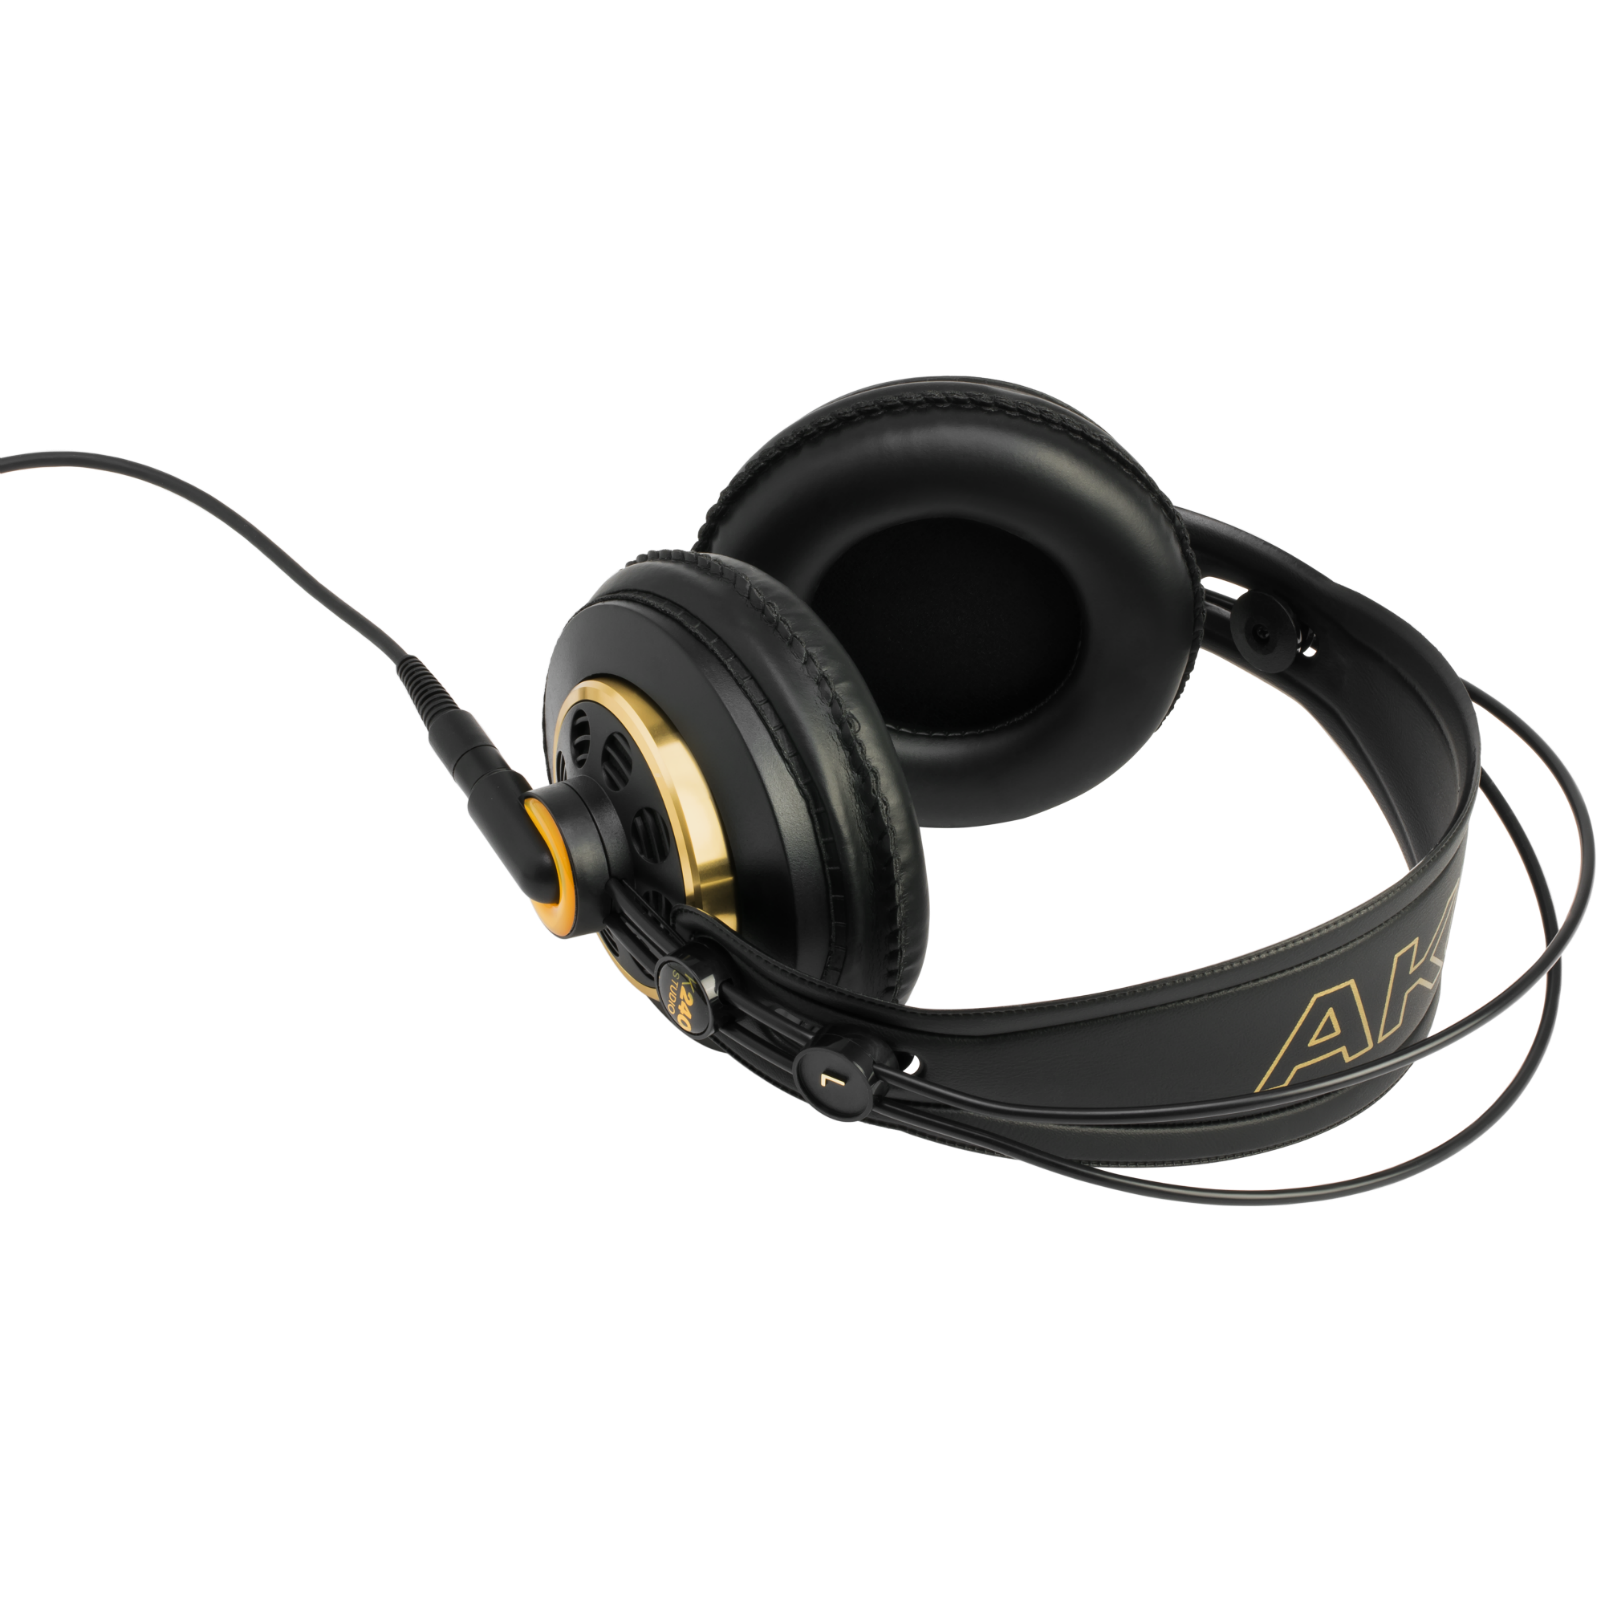 K240 STUDIO - Black - Professional studio headphones - Detailshot 1